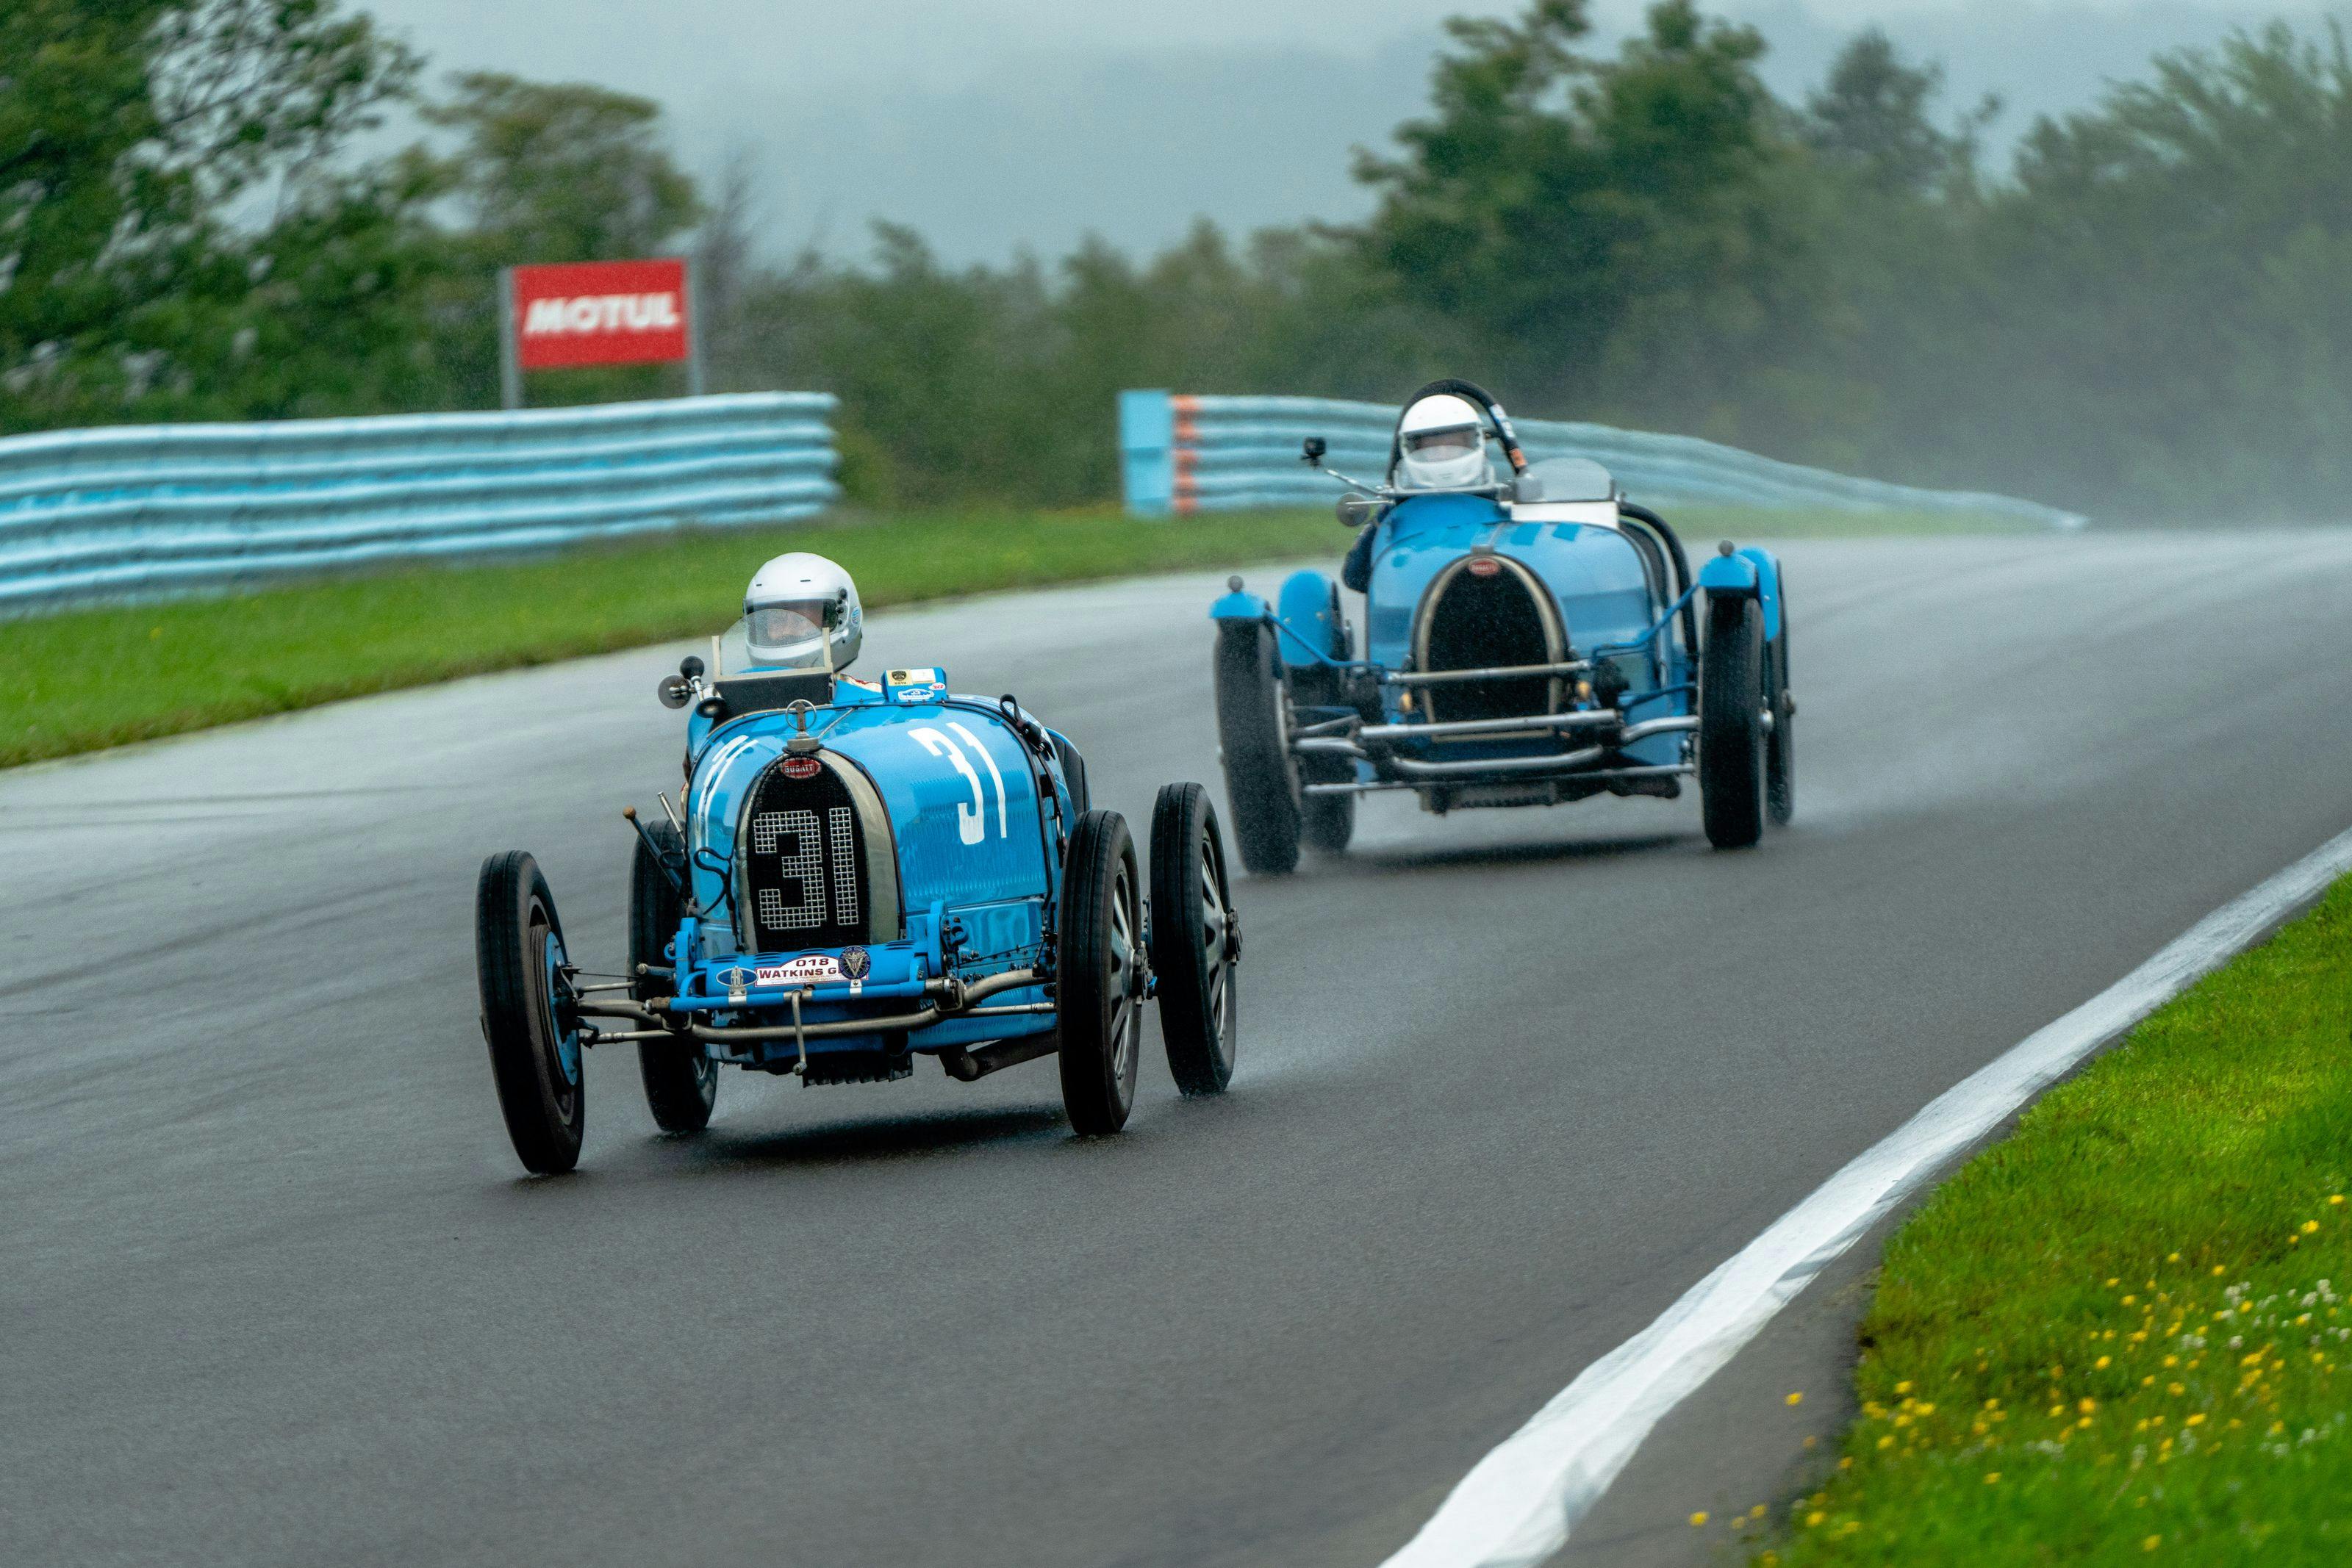 The 11th U.S. Bugatti Grand Prix celebrates racing legends